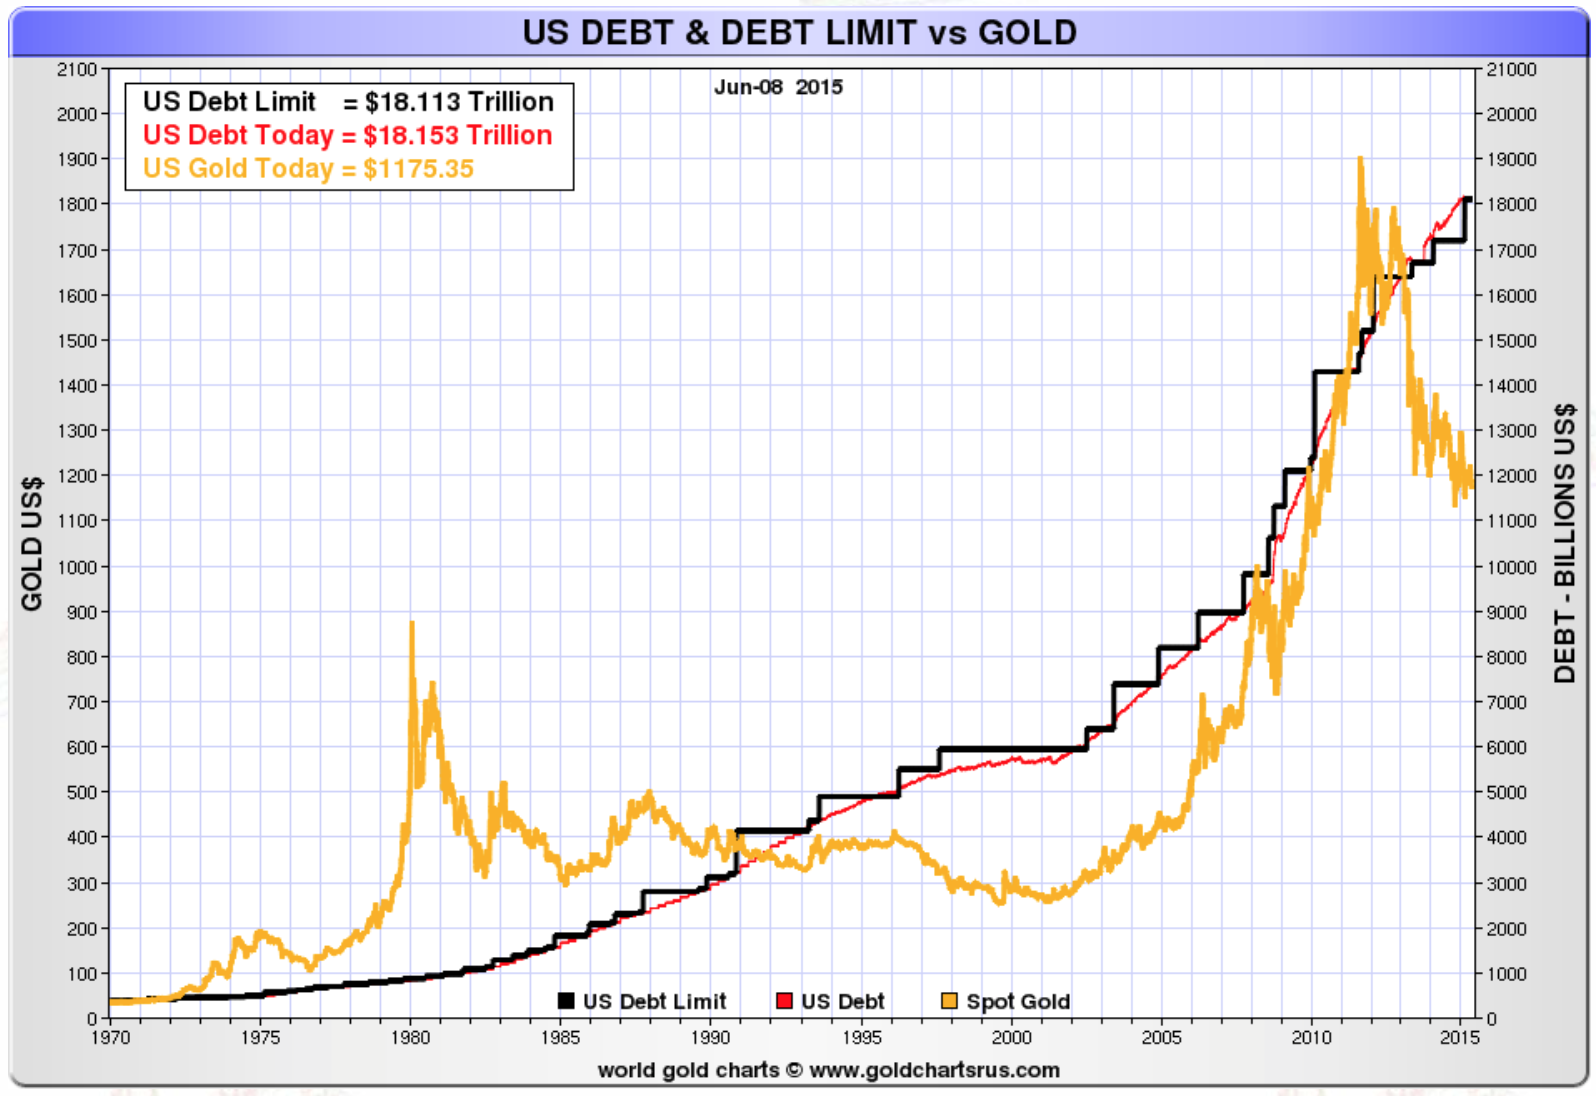 https://www.goldbroker.fr/media/image/cms/media/images/newscast-ep1/US-debt-debt-limit-gold.png